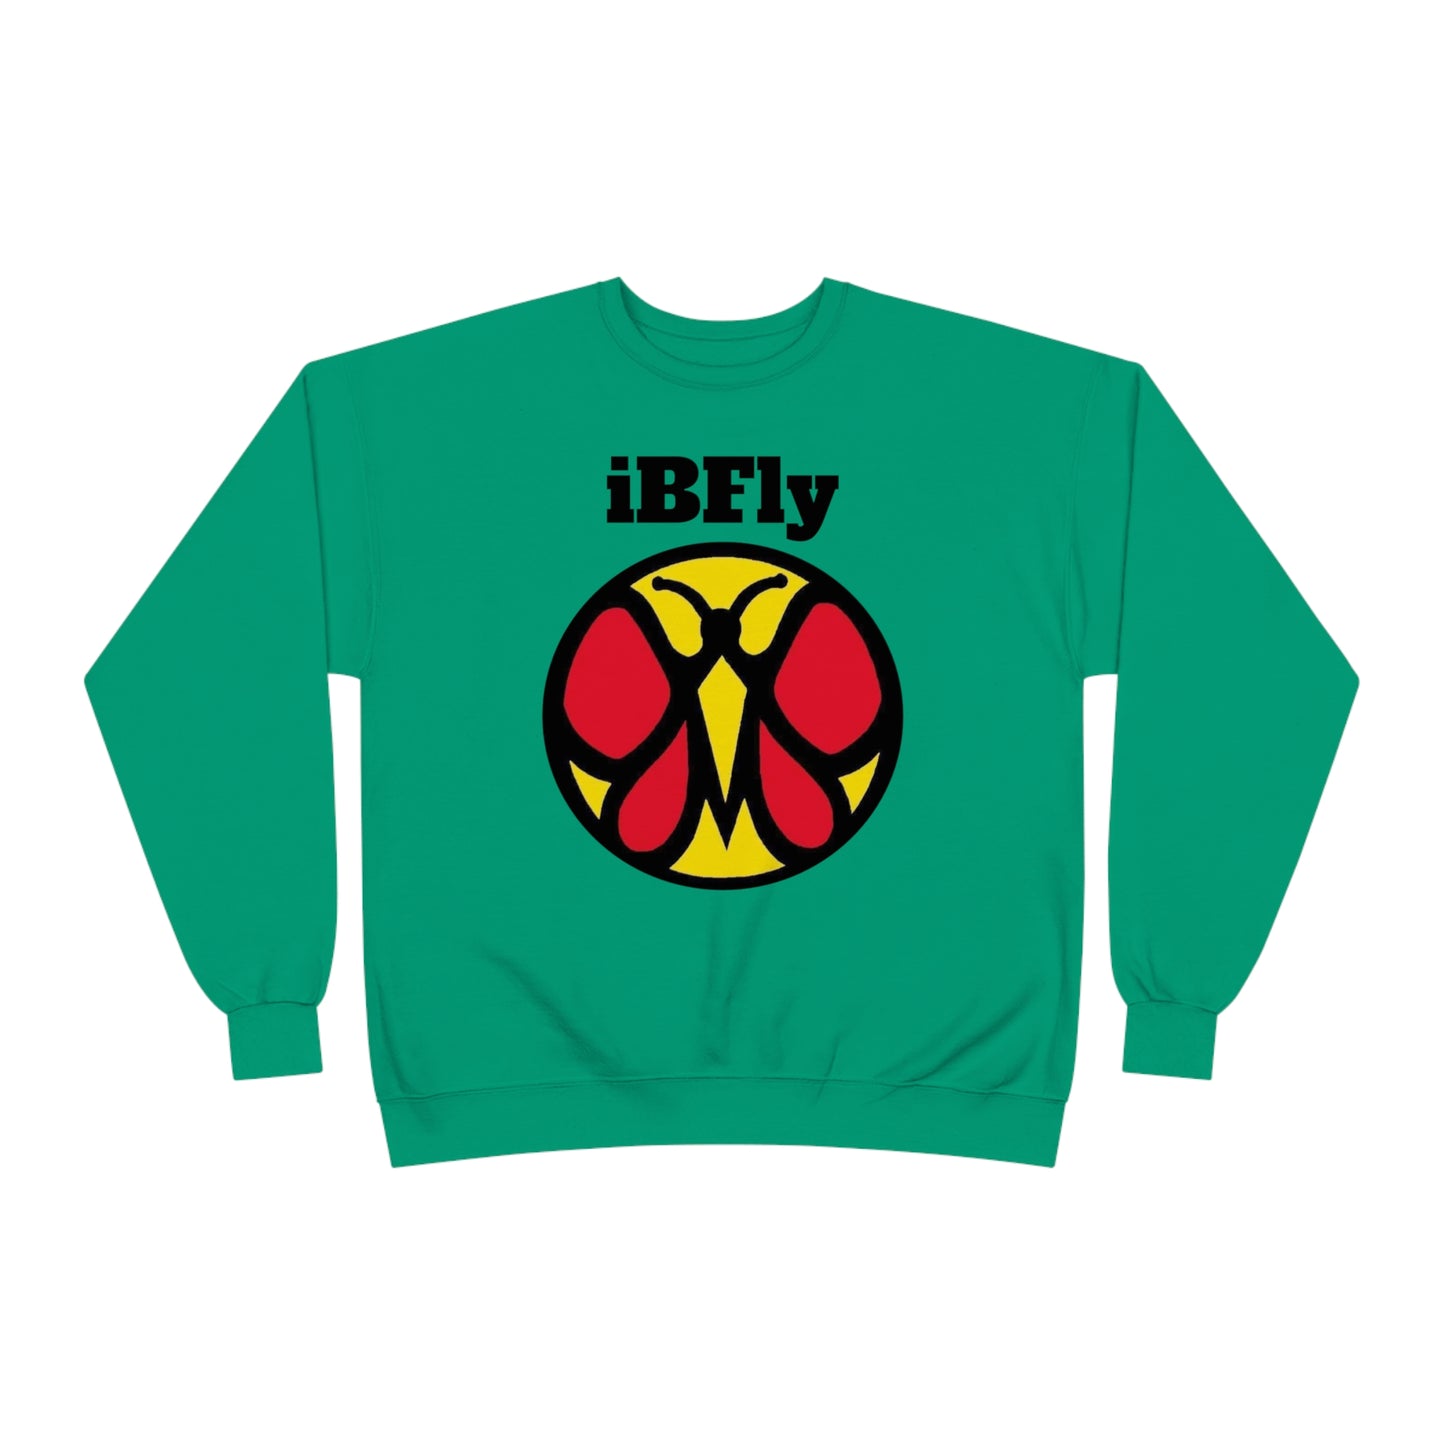 iBFly Crewneck Sweatshirt